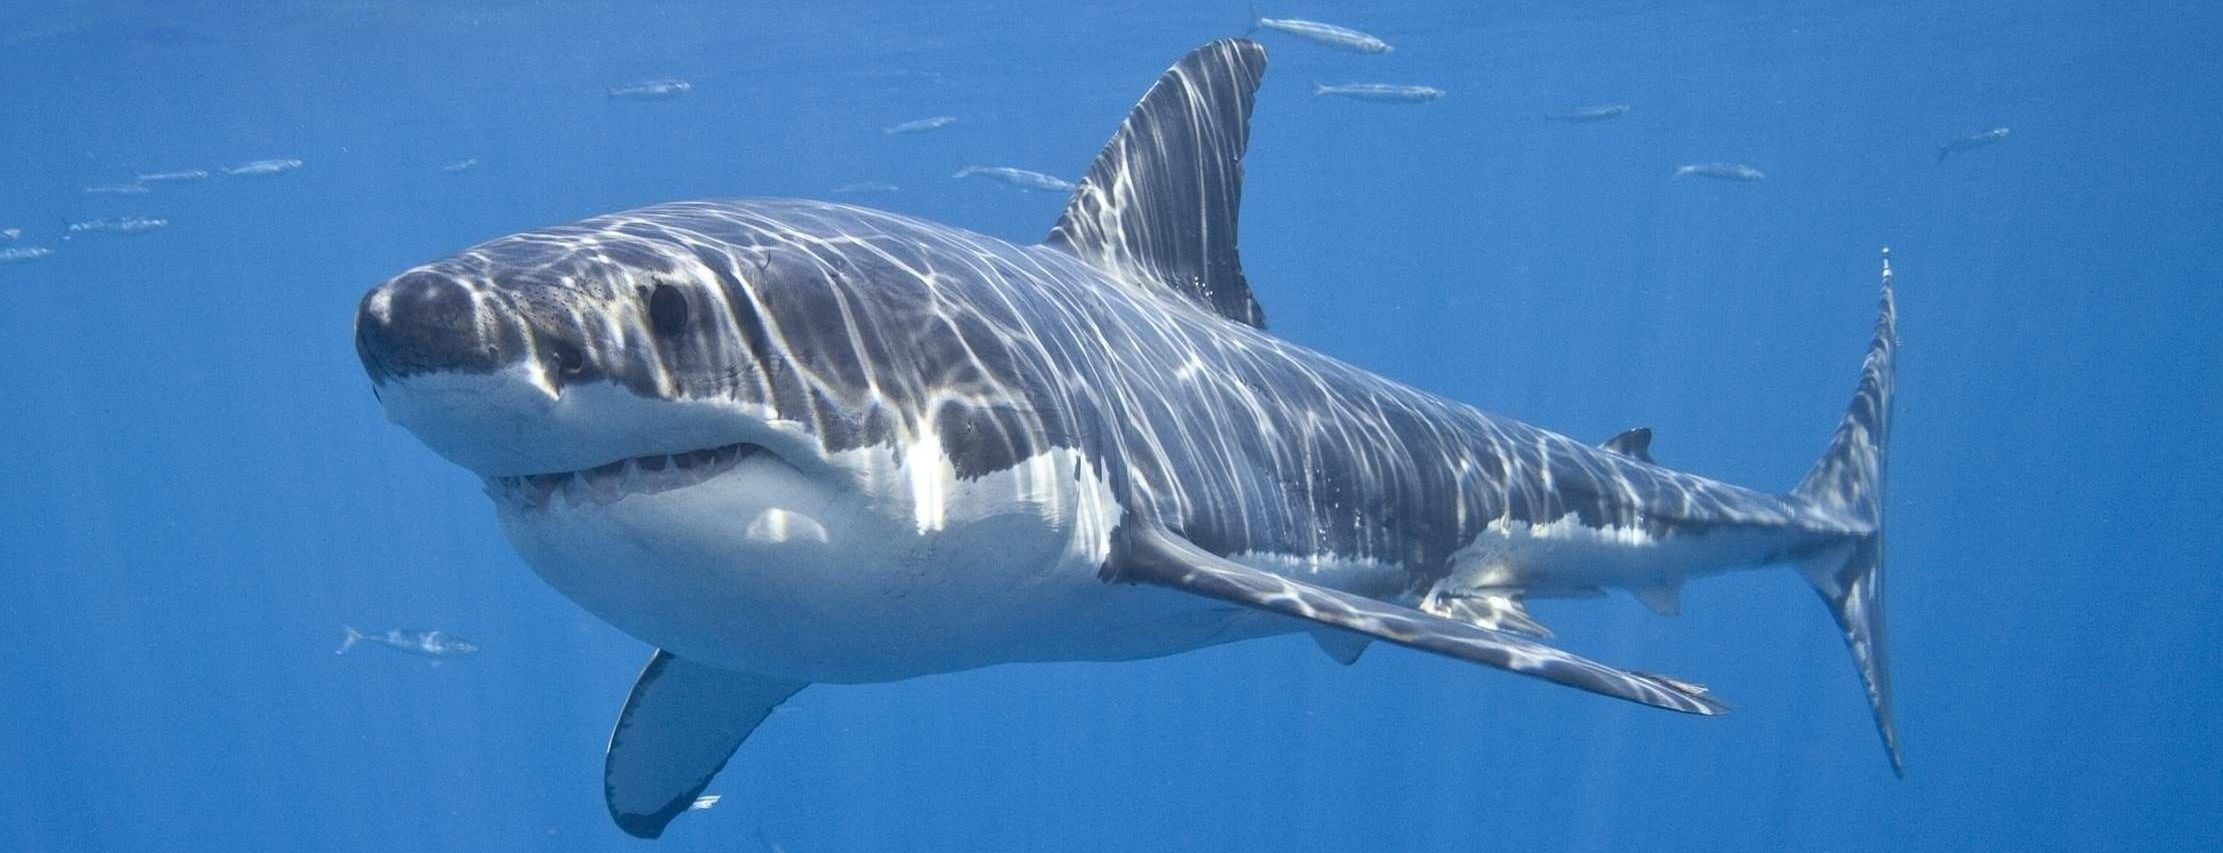 Смерть прошла мимо: в Австралии белая акула проплыла в метре от серфера